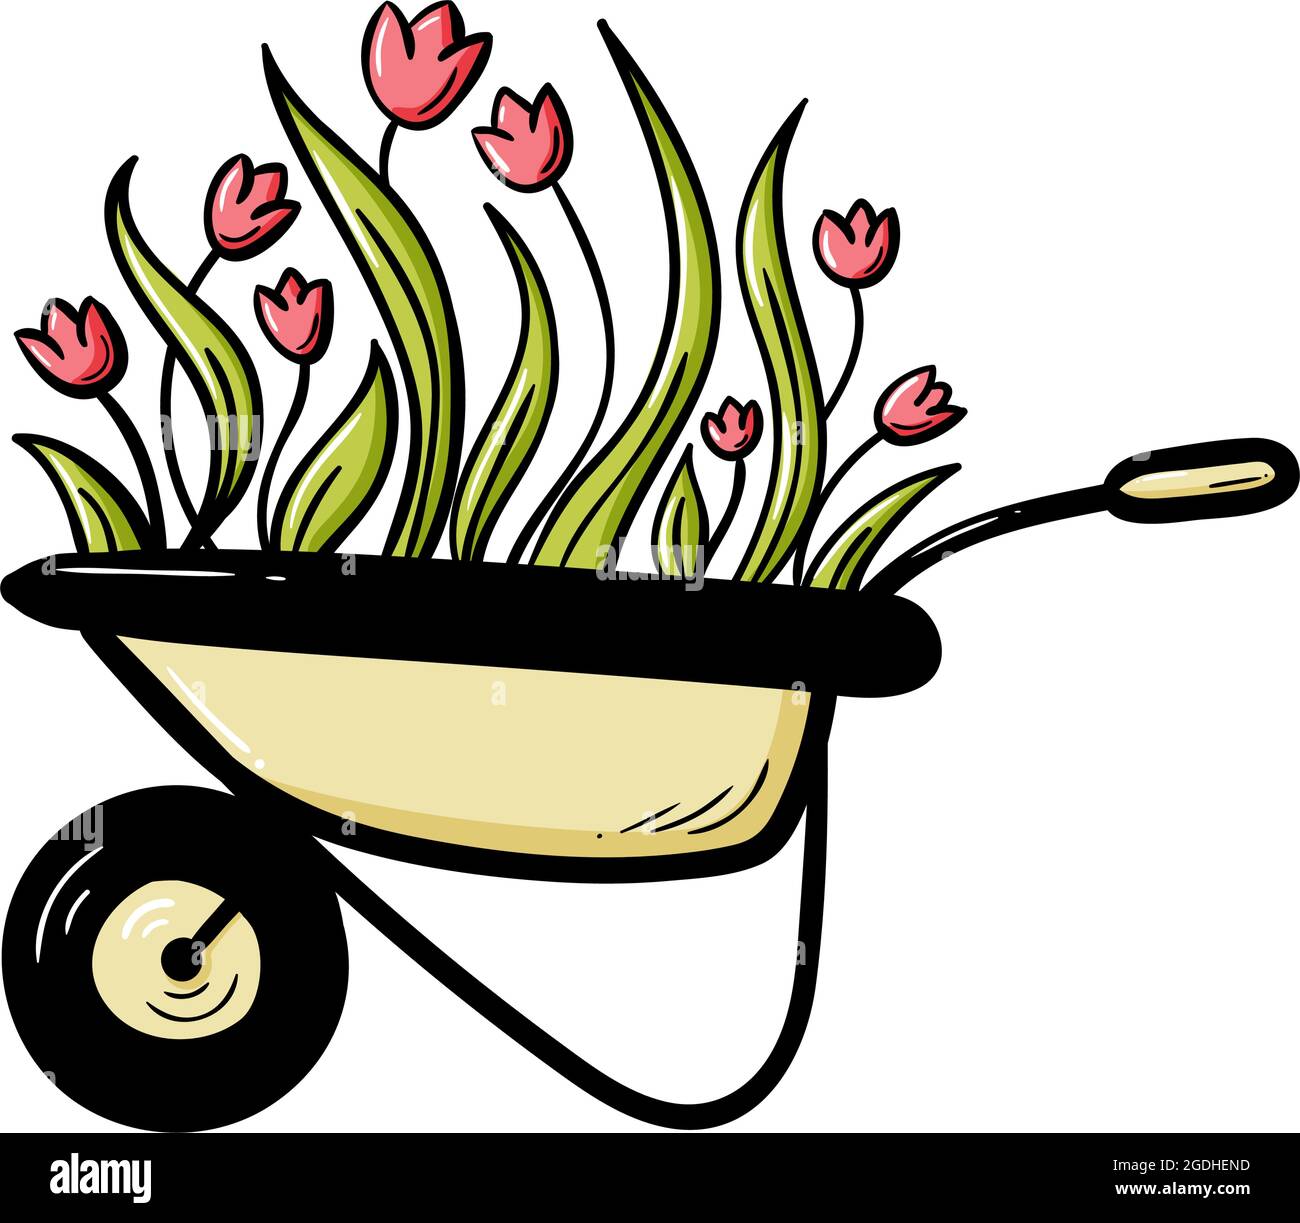 macizo de flores y equipo de jardinero carretilla carrito de jardín  regadera rastrillo de jardín en